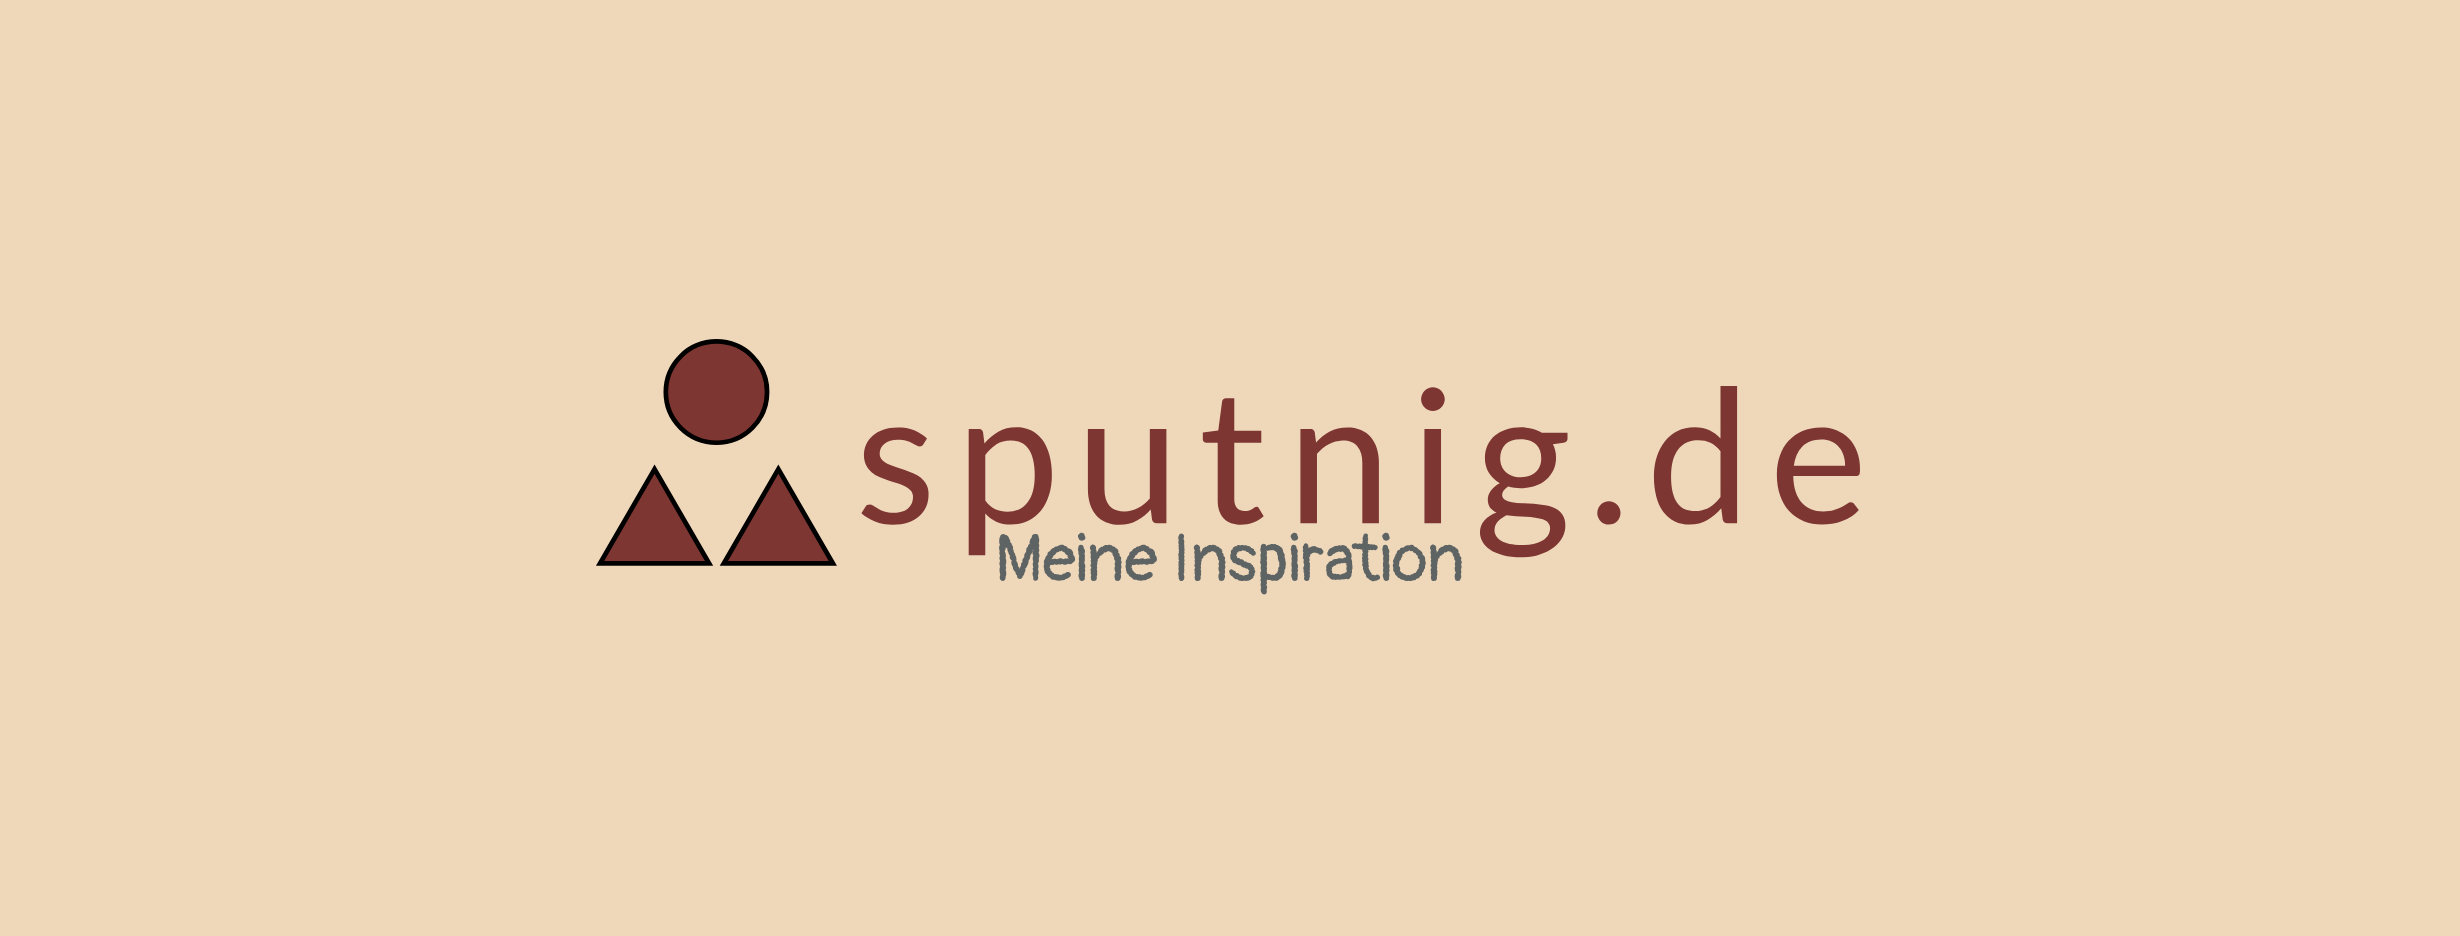 www.sputnig.de-Logo